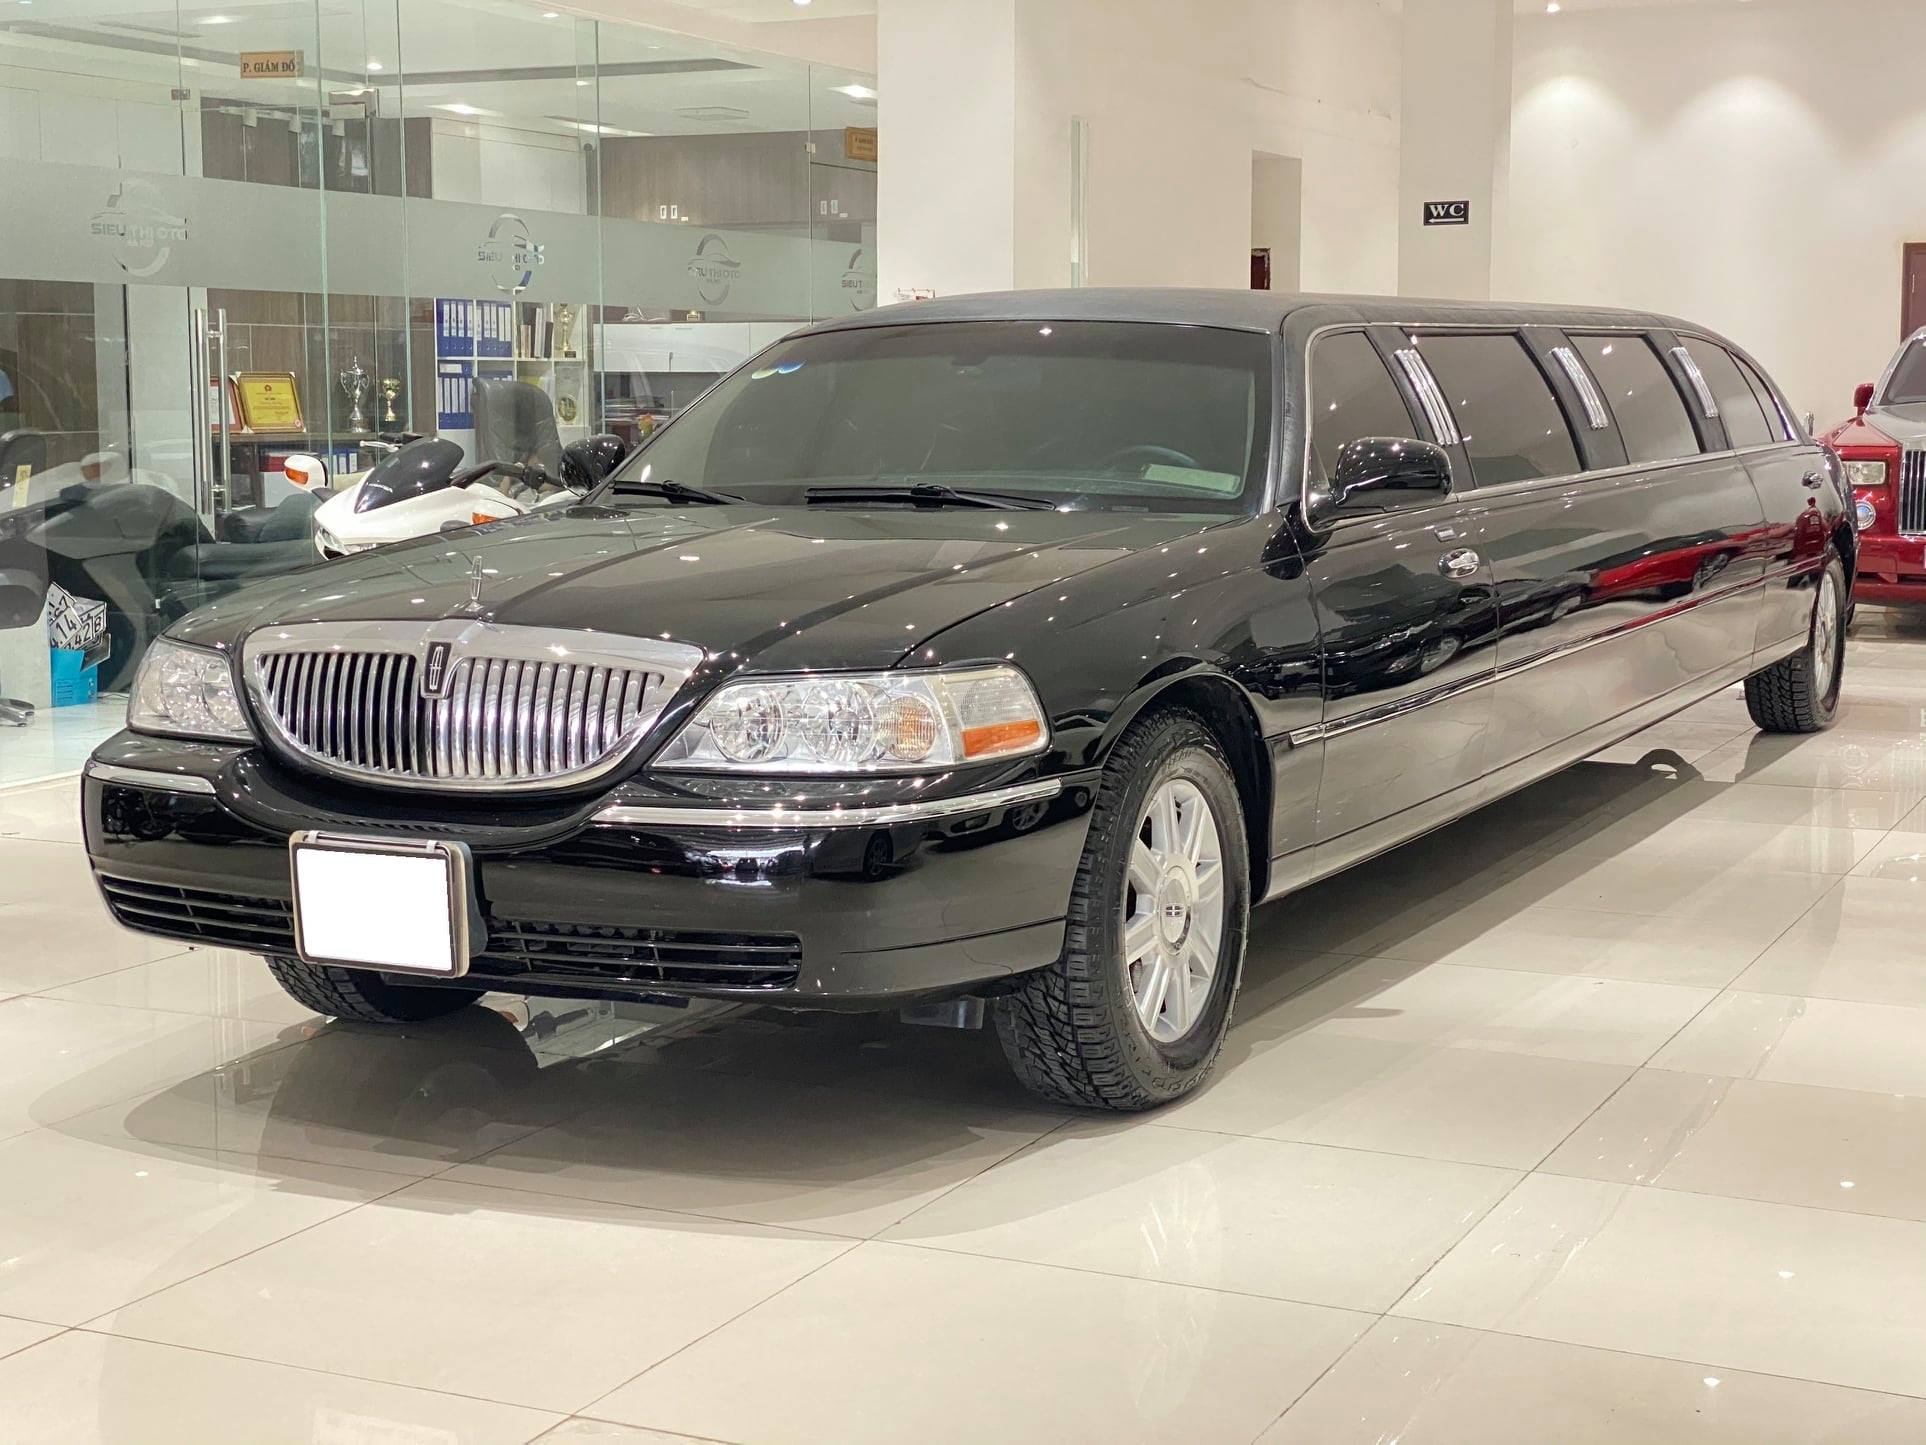 Giữ mới cả thập kỷ, chủ nhân hàng hiếm limousine bán xe với giá chỉ 2,6 tỷ đồng - Ảnh 5.